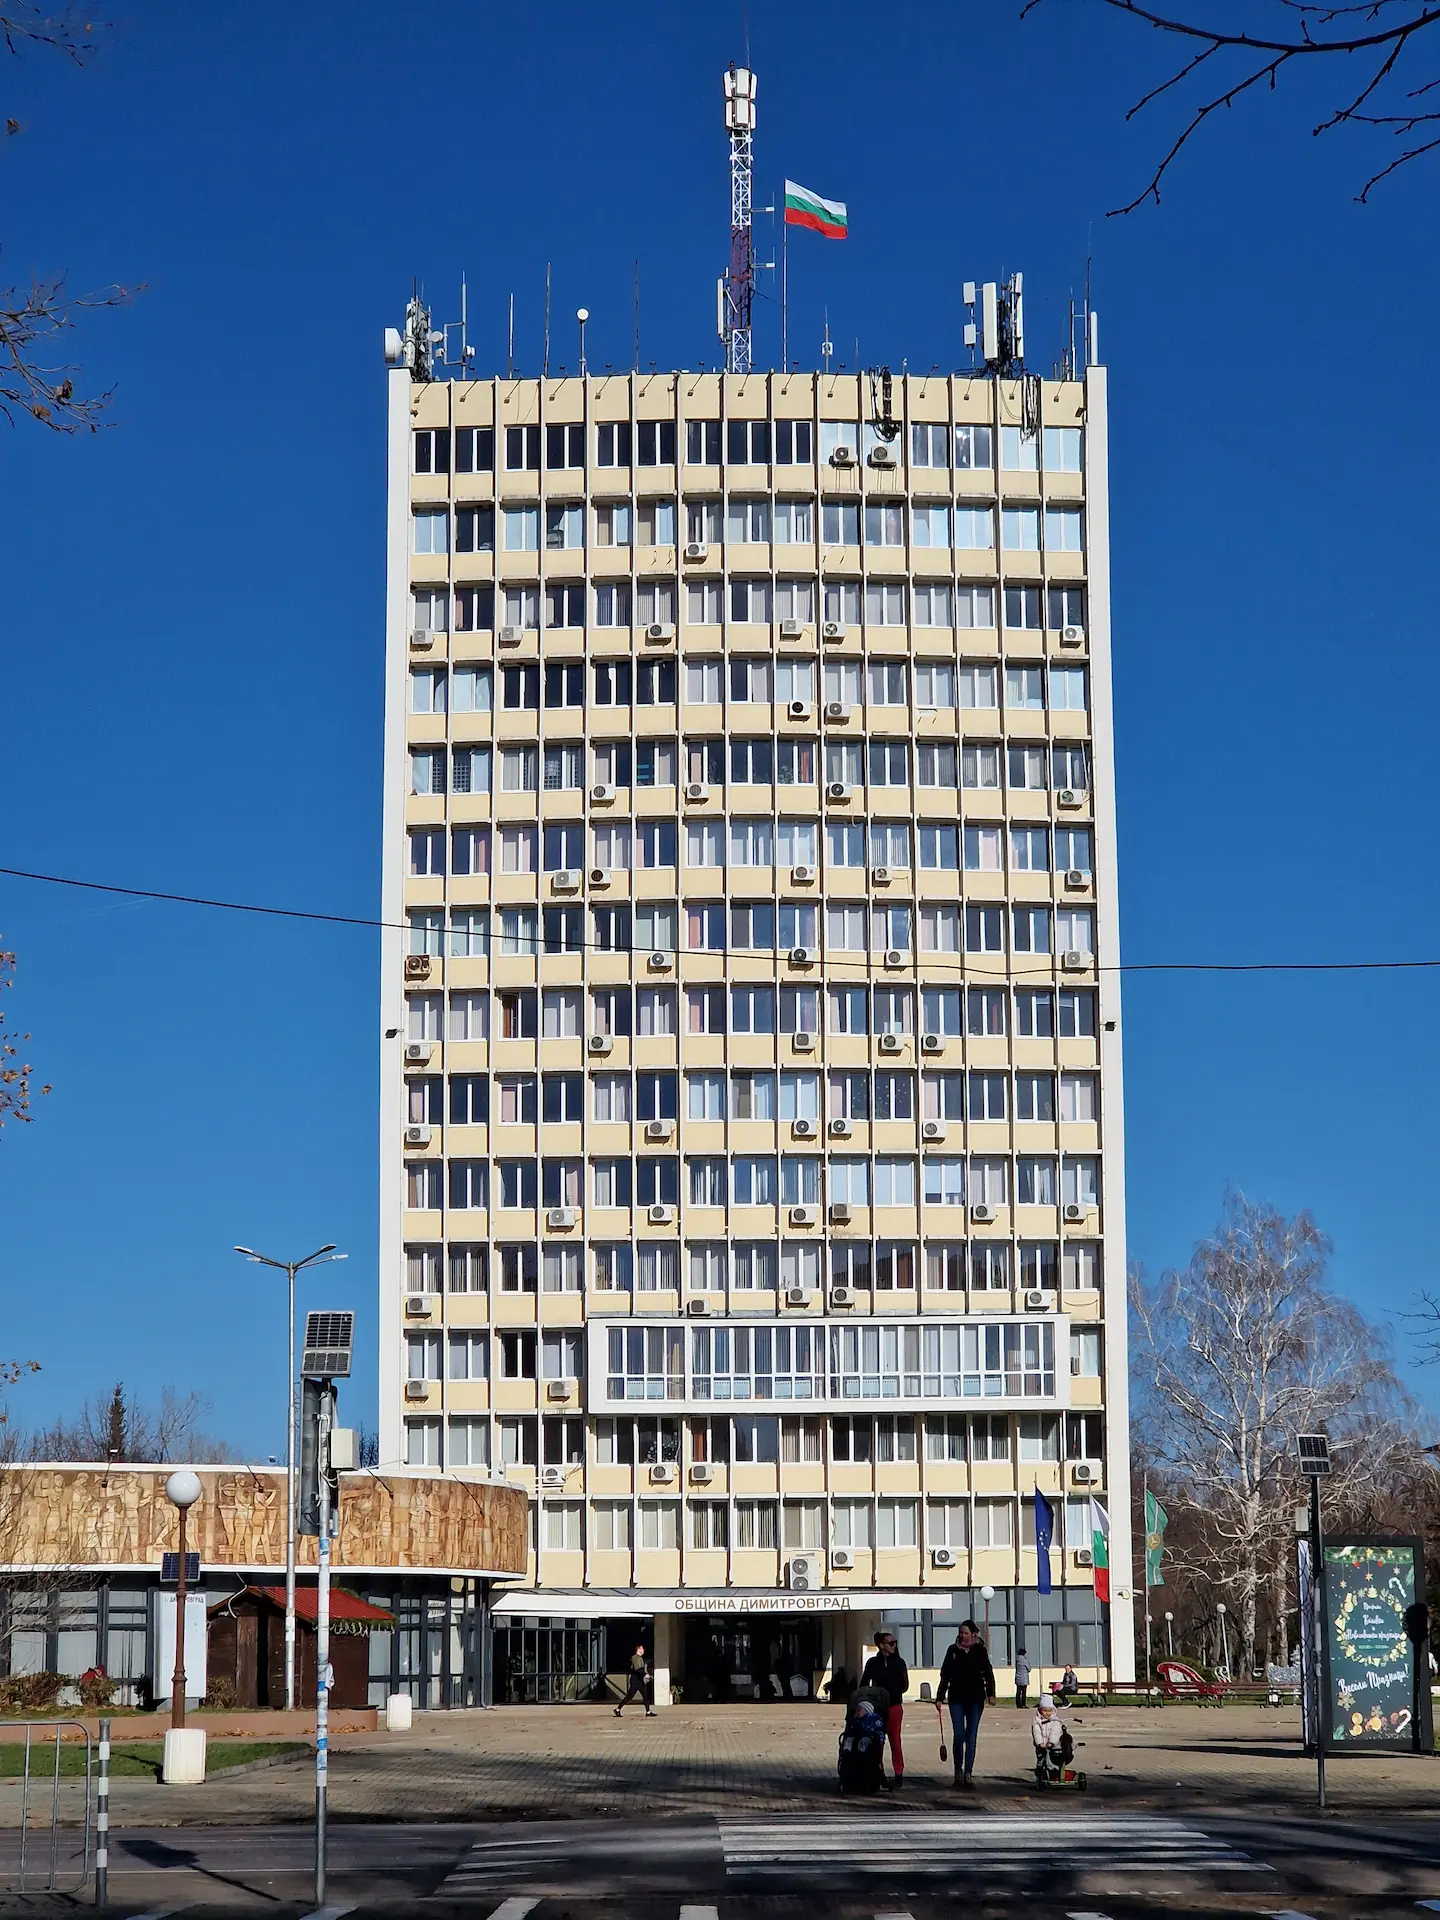 La grande tour blanche de l'hôtel de ville, 14 étages, drapeau bulgare qui flotte sur le toit à côté d'antennes diverses